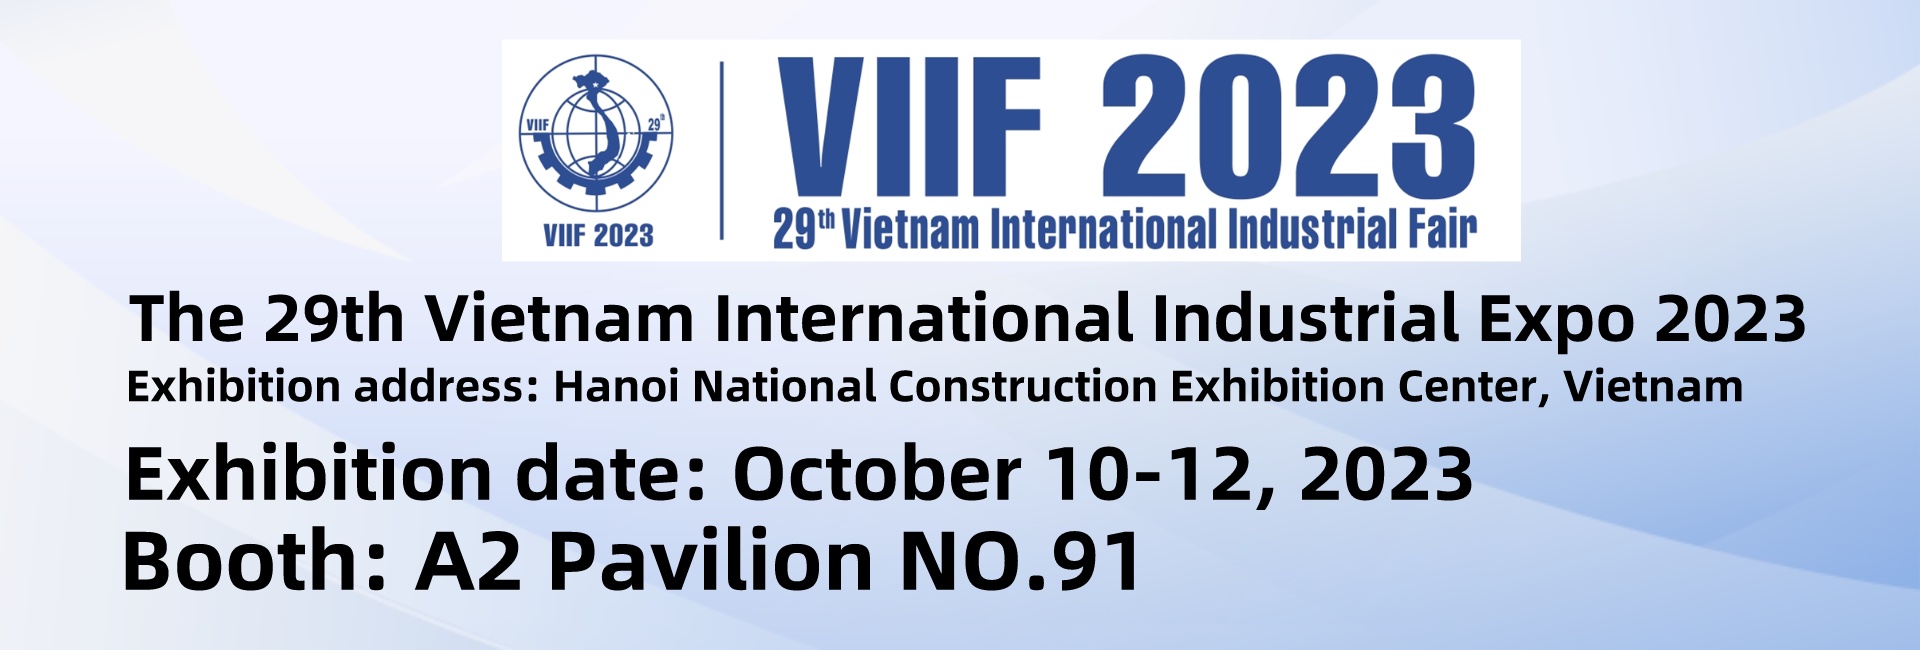 29. vietnamská medzinárodná priemyselná výstava Expo 2023